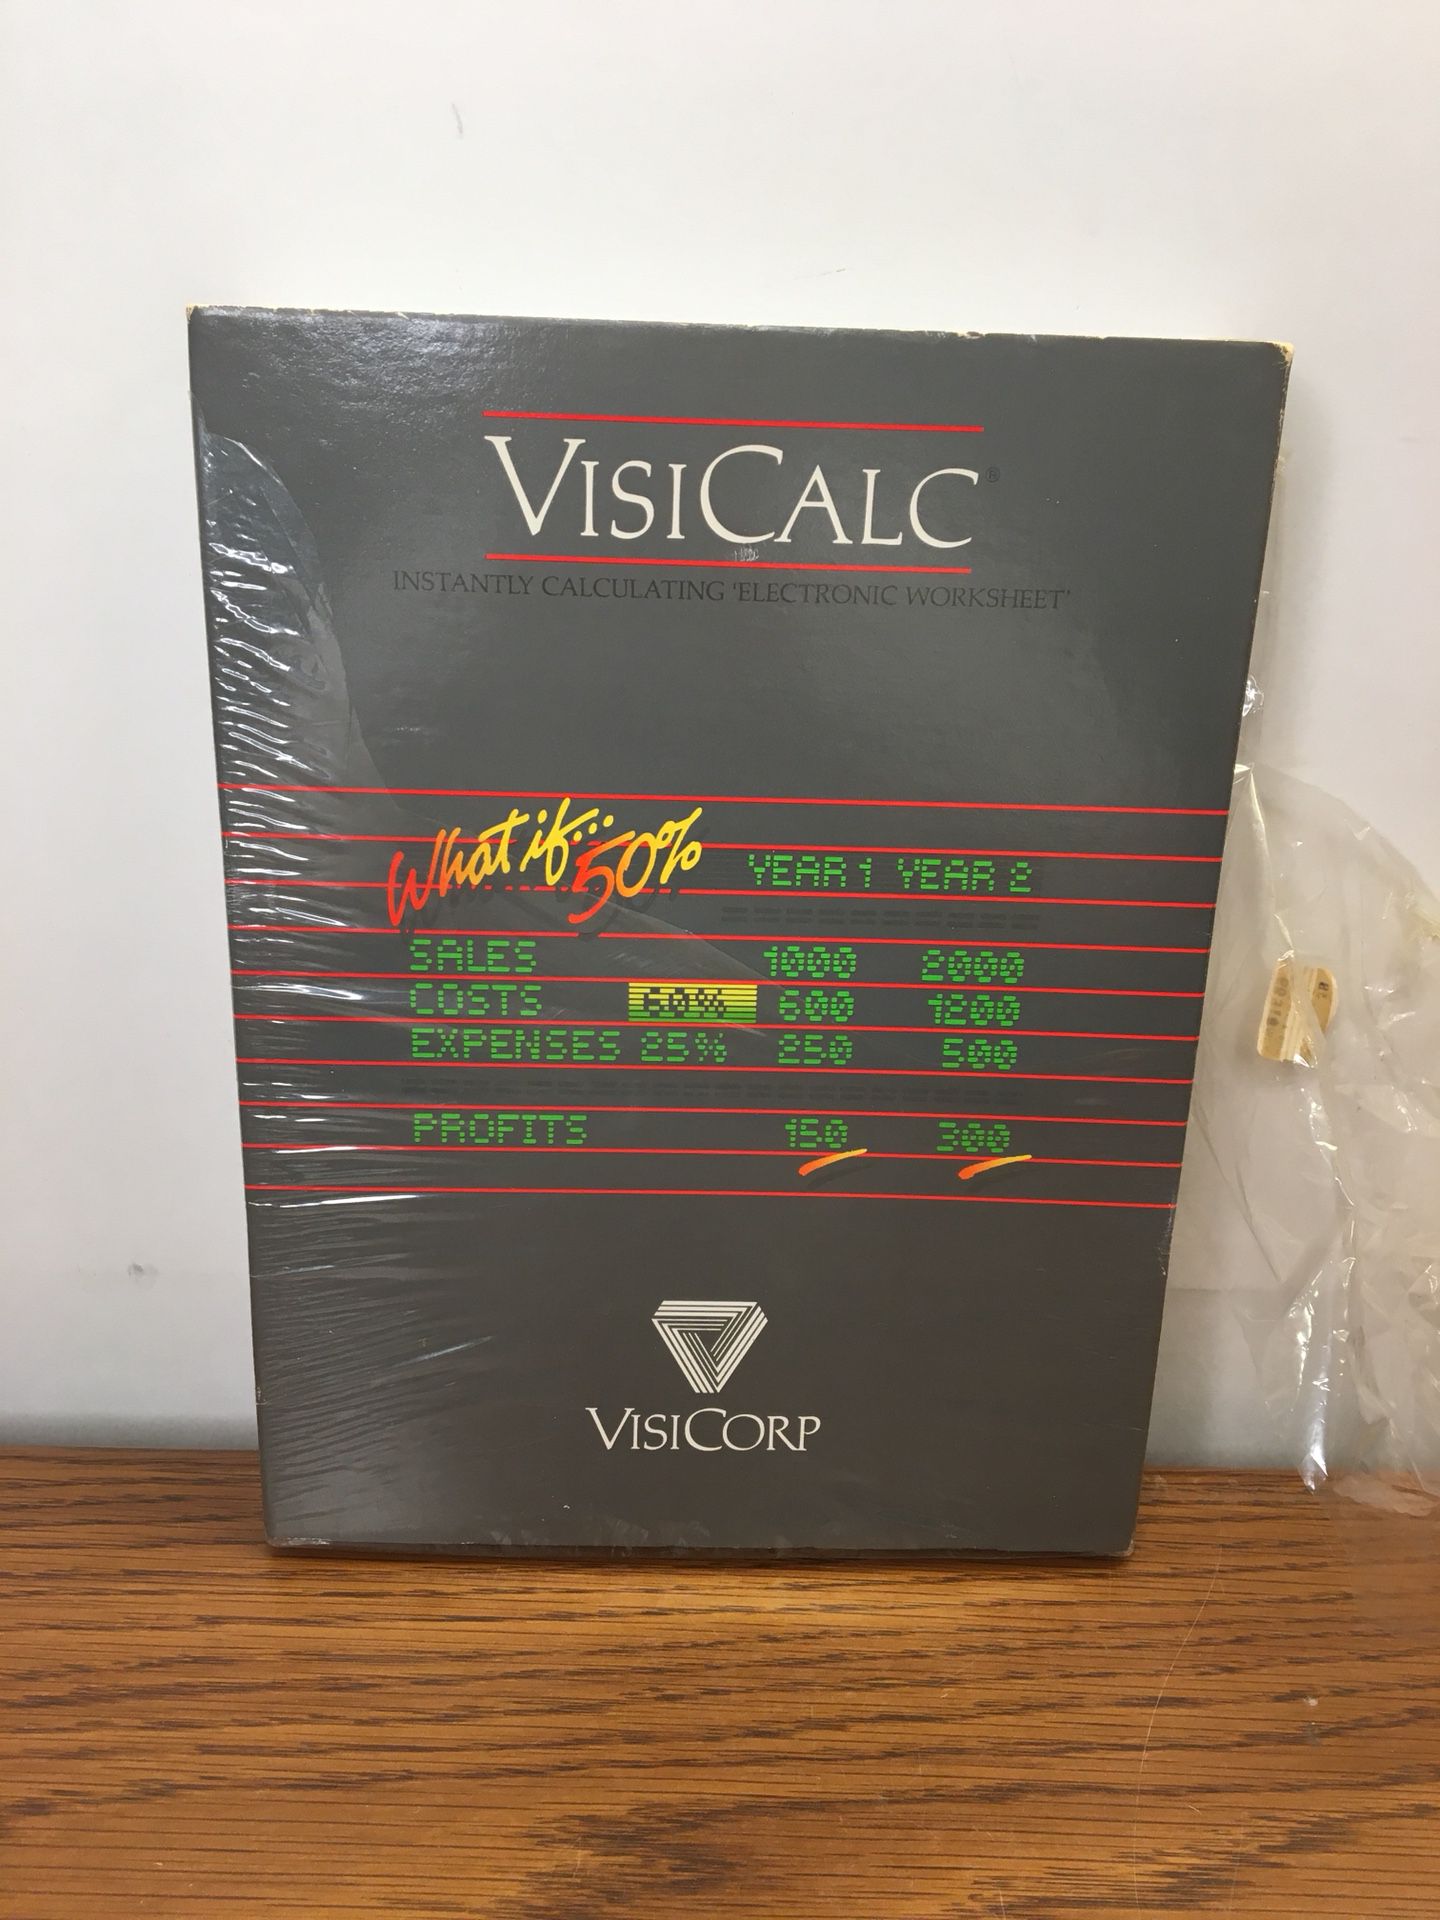 VisiCalc Visicorp Worksheet Software For Atari 800